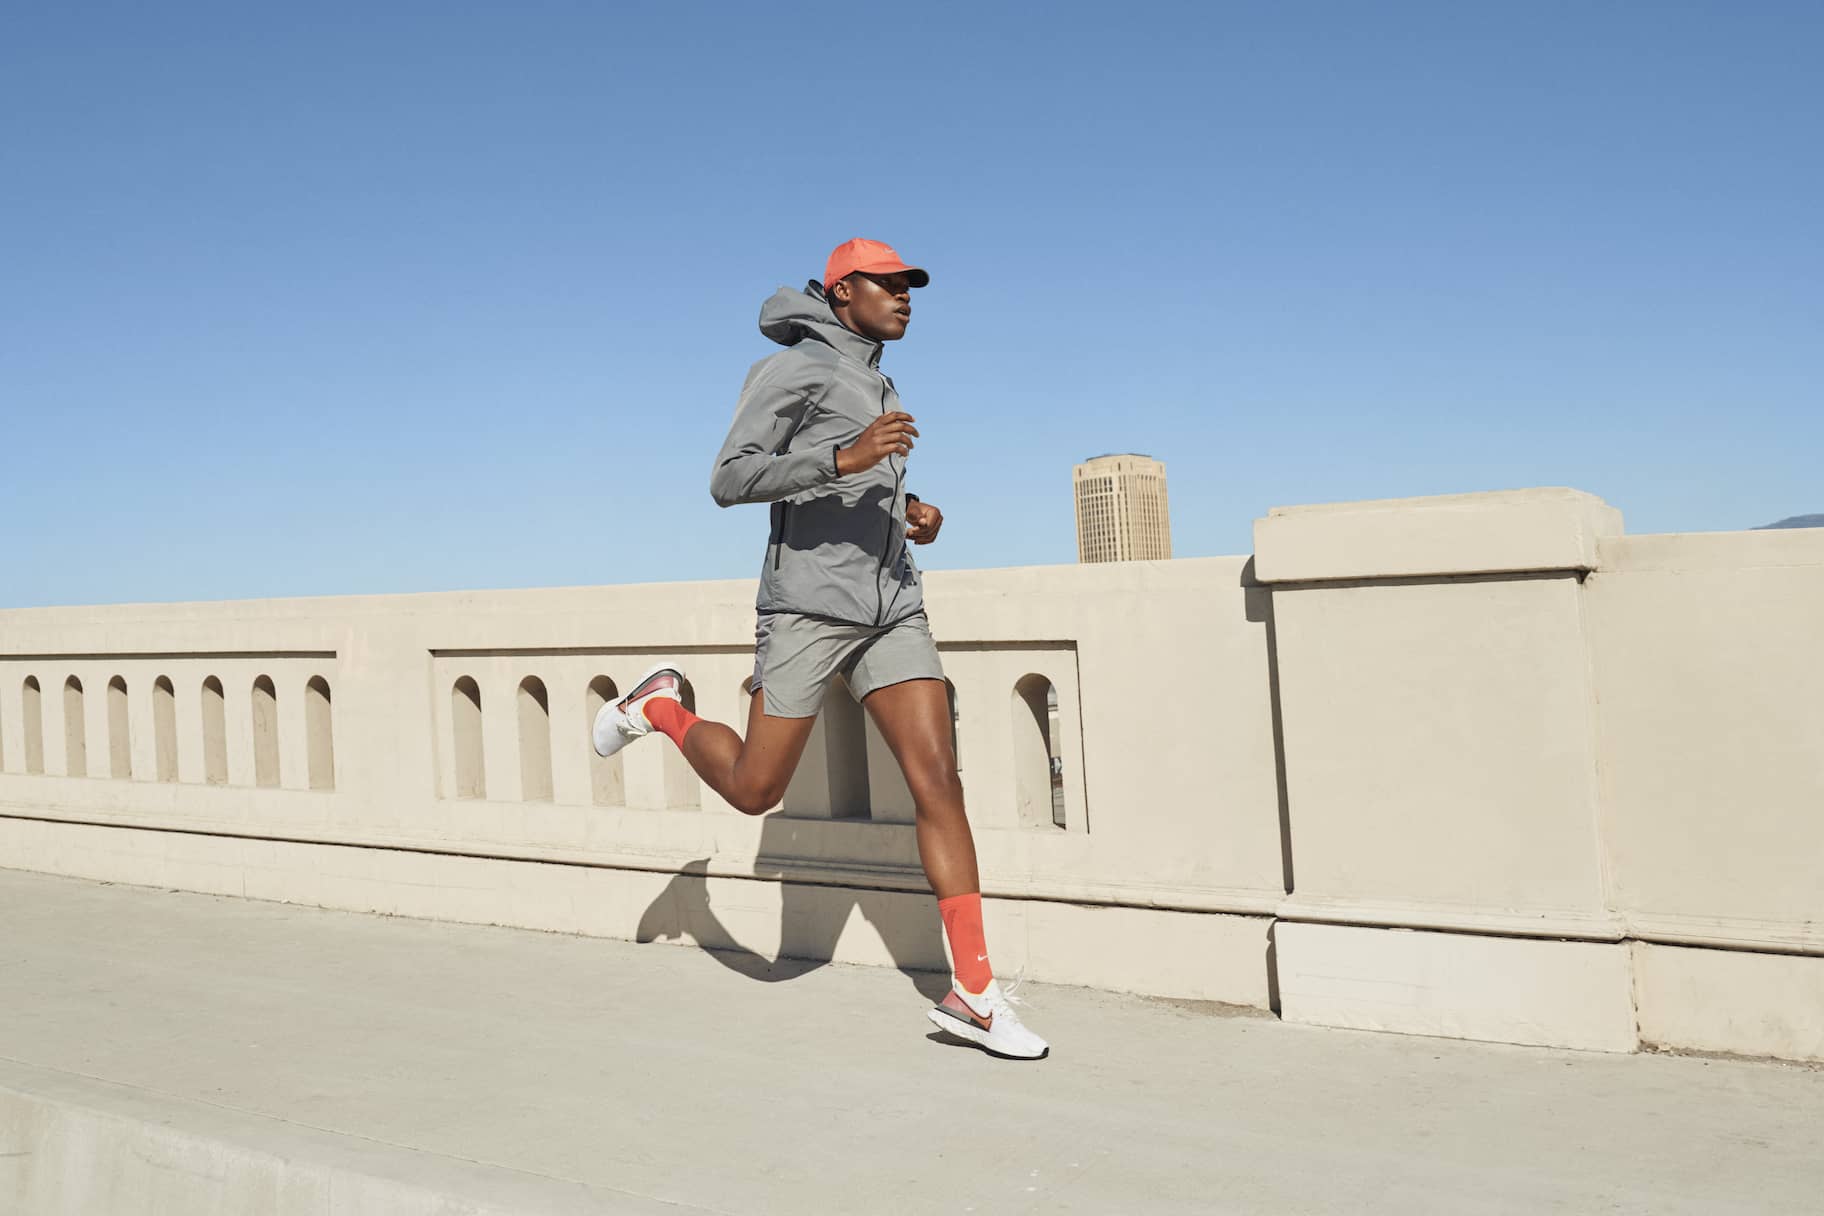 Die Top Favoriten - Entdecken Sie die Nike running shoes for men Ihren Wünschen entsprechend